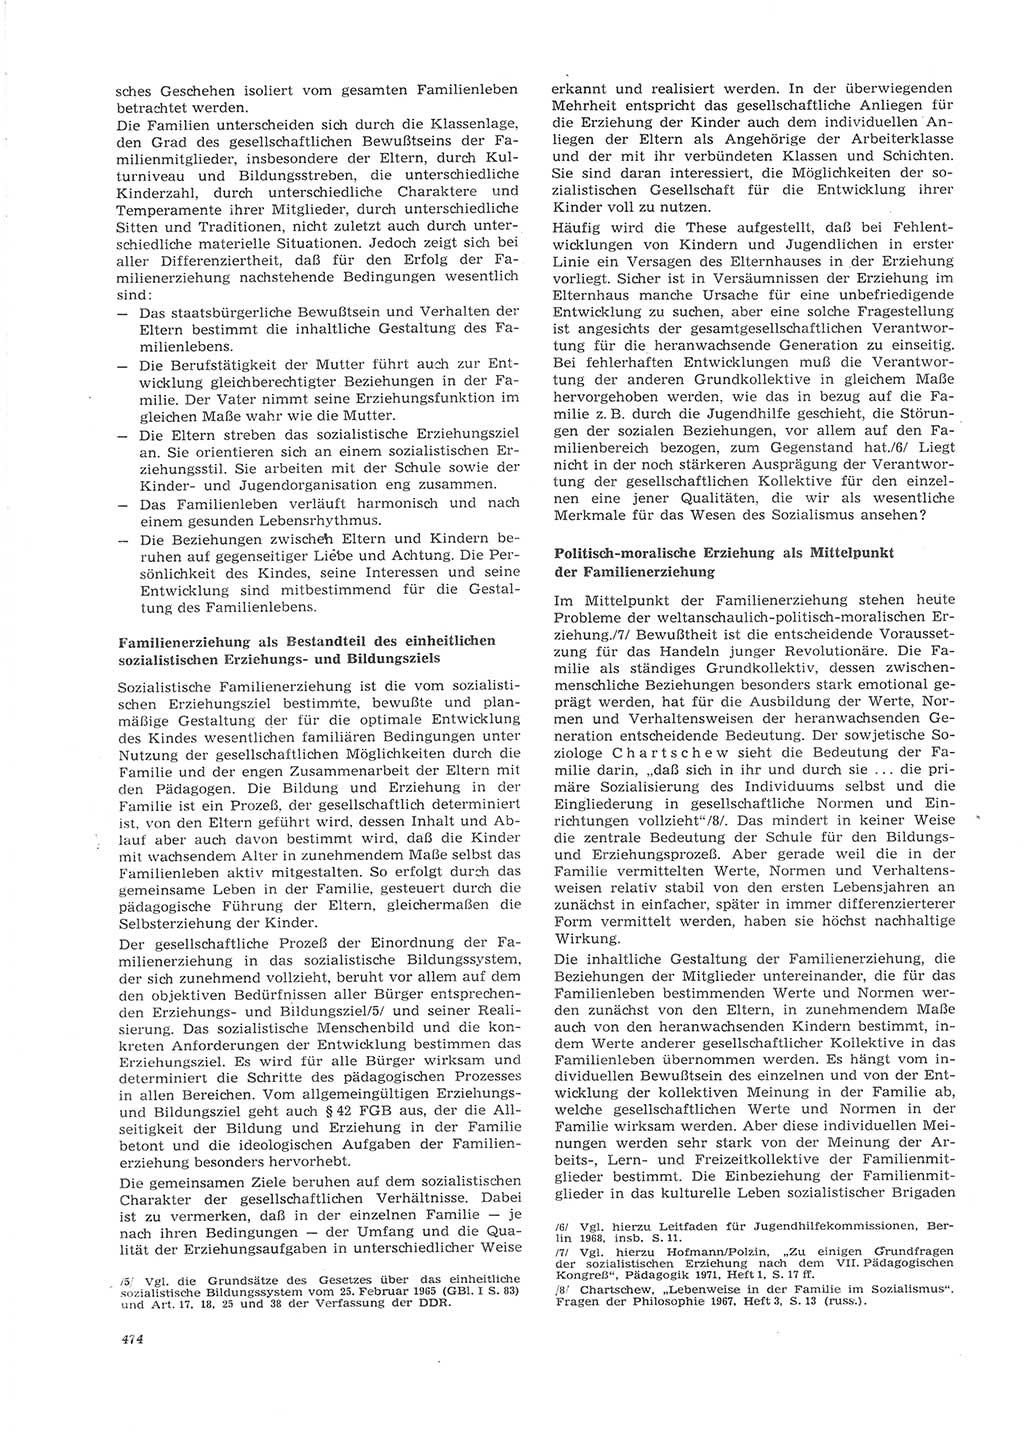 Neue Justiz (NJ), Zeitschrift für Recht und Rechtswissenschaft [Deutsche Demokratische Republik (DDR)], 26. Jahrgang 1972, Seite 474 (NJ DDR 1972, S. 474)